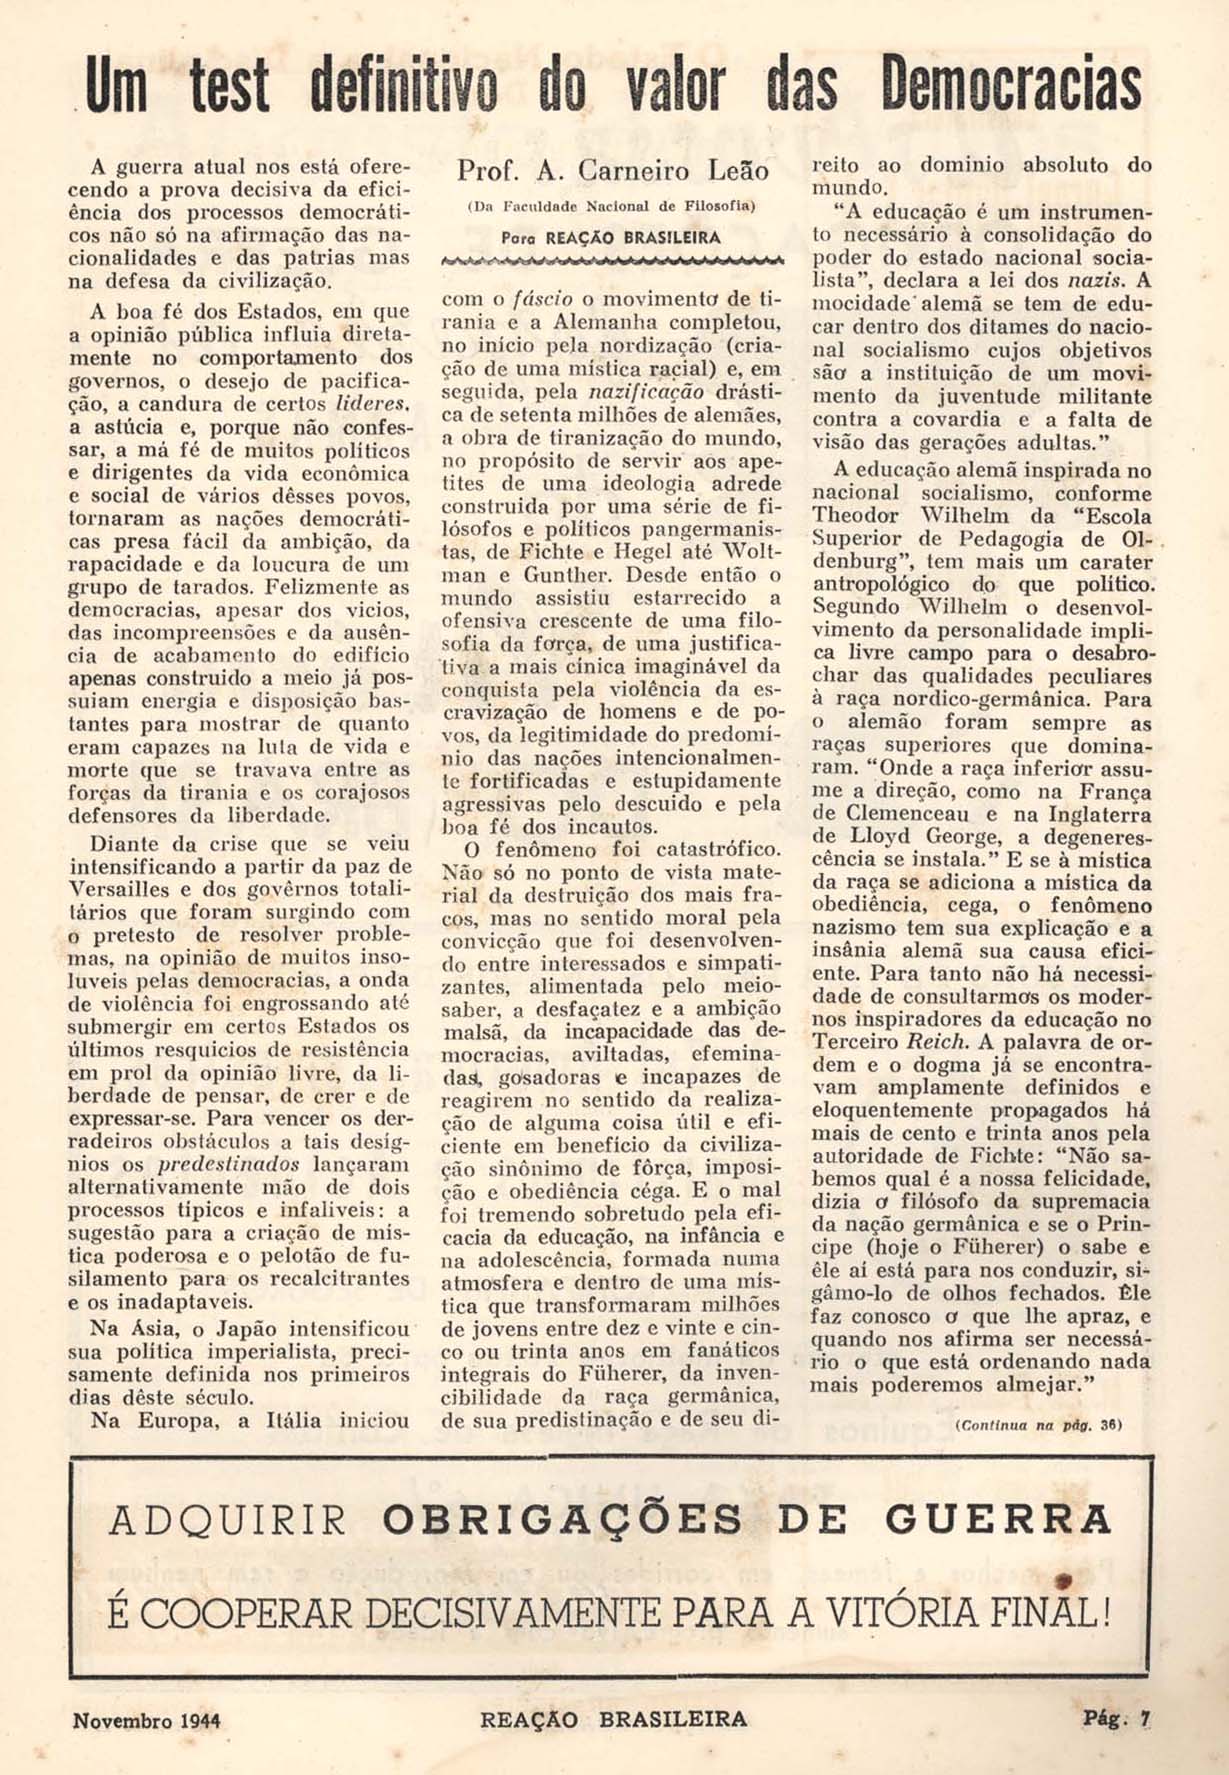 LEÃO, A. Carneiro. Um test definitivo do valor das democracias. Reação Brasileira, Rio de Janeiro, n. 11, vol.II, p. 7 e 36, nov. 1944.